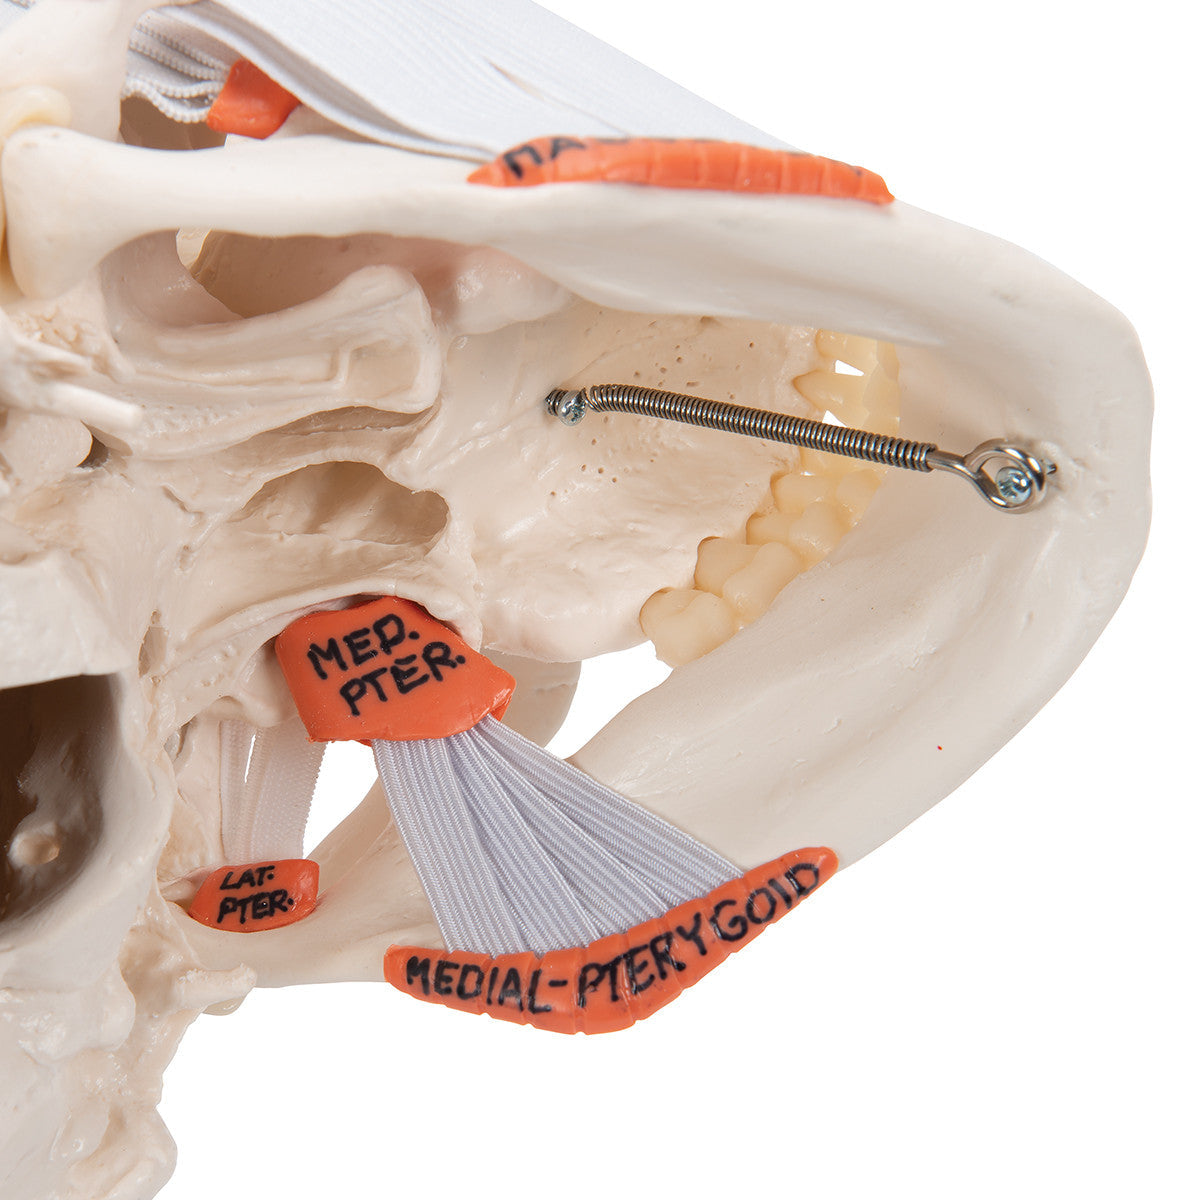 TMJ Human Skull Model